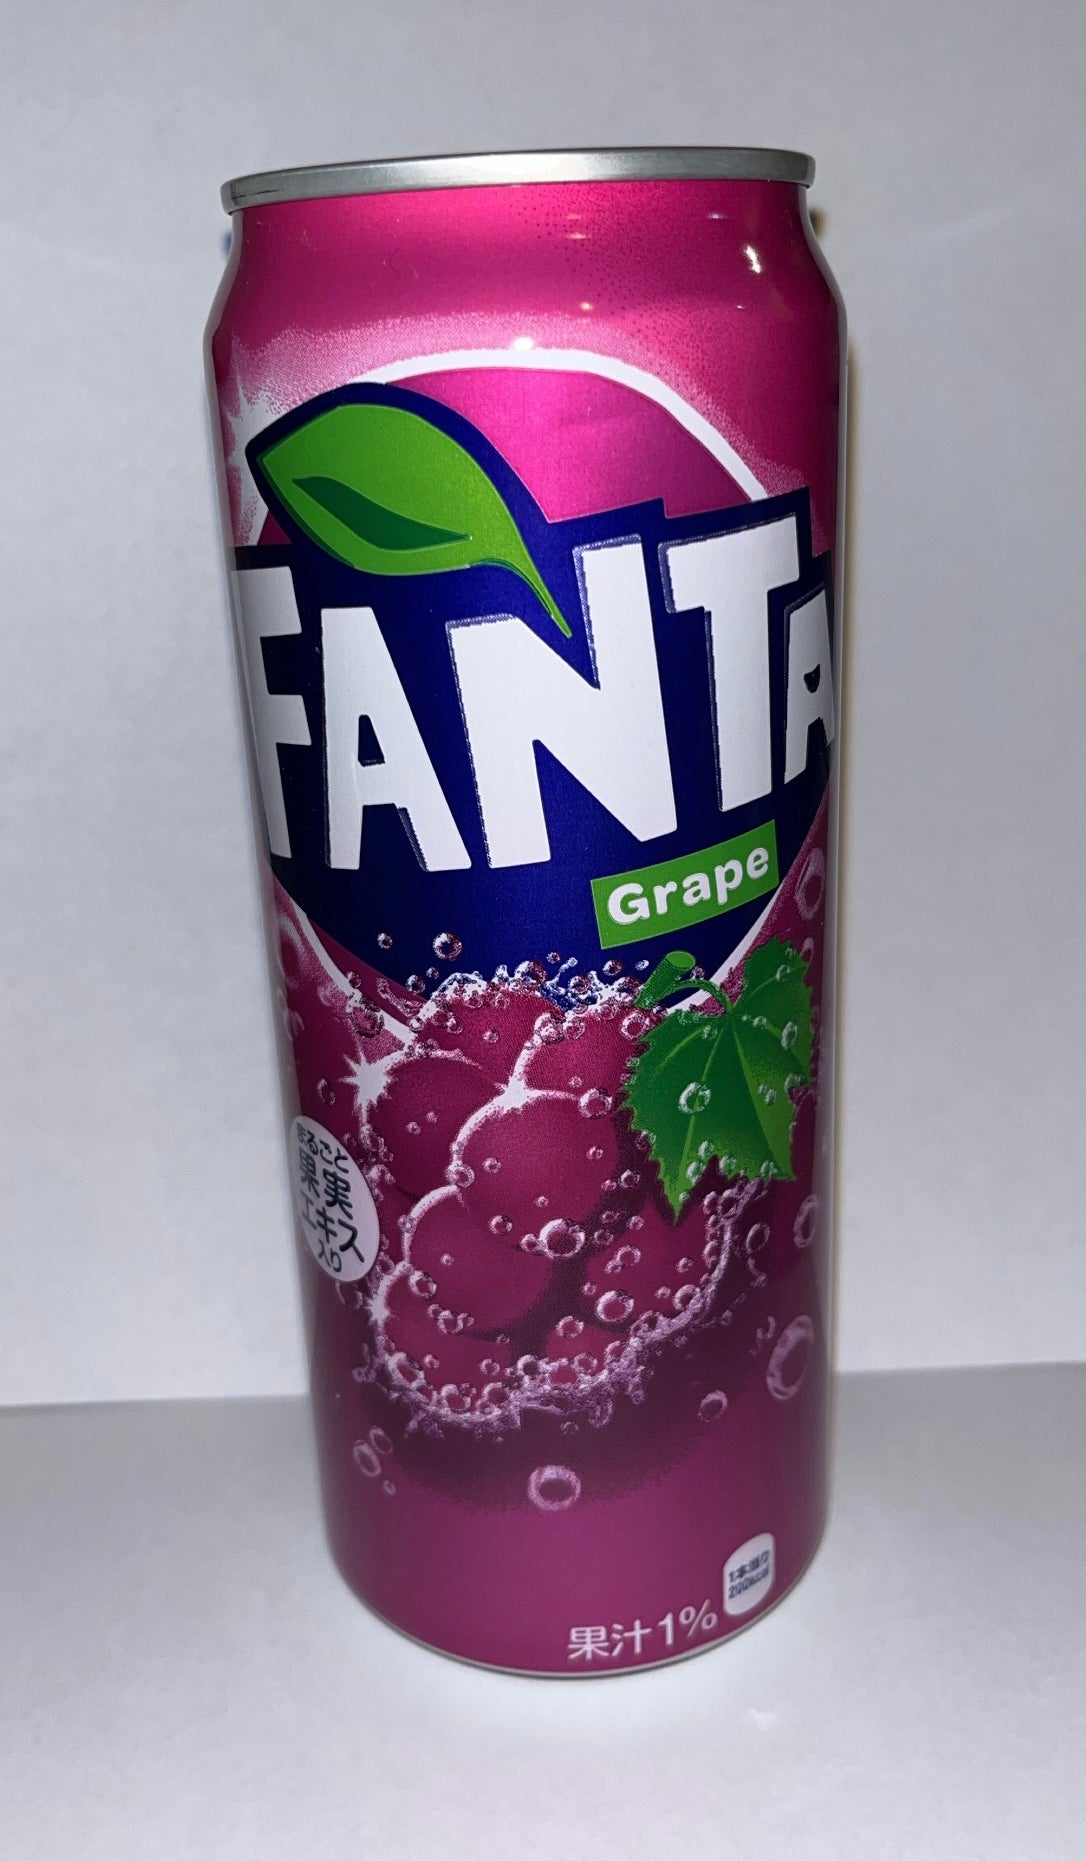 Fanta Grape (Japan) (500ml)